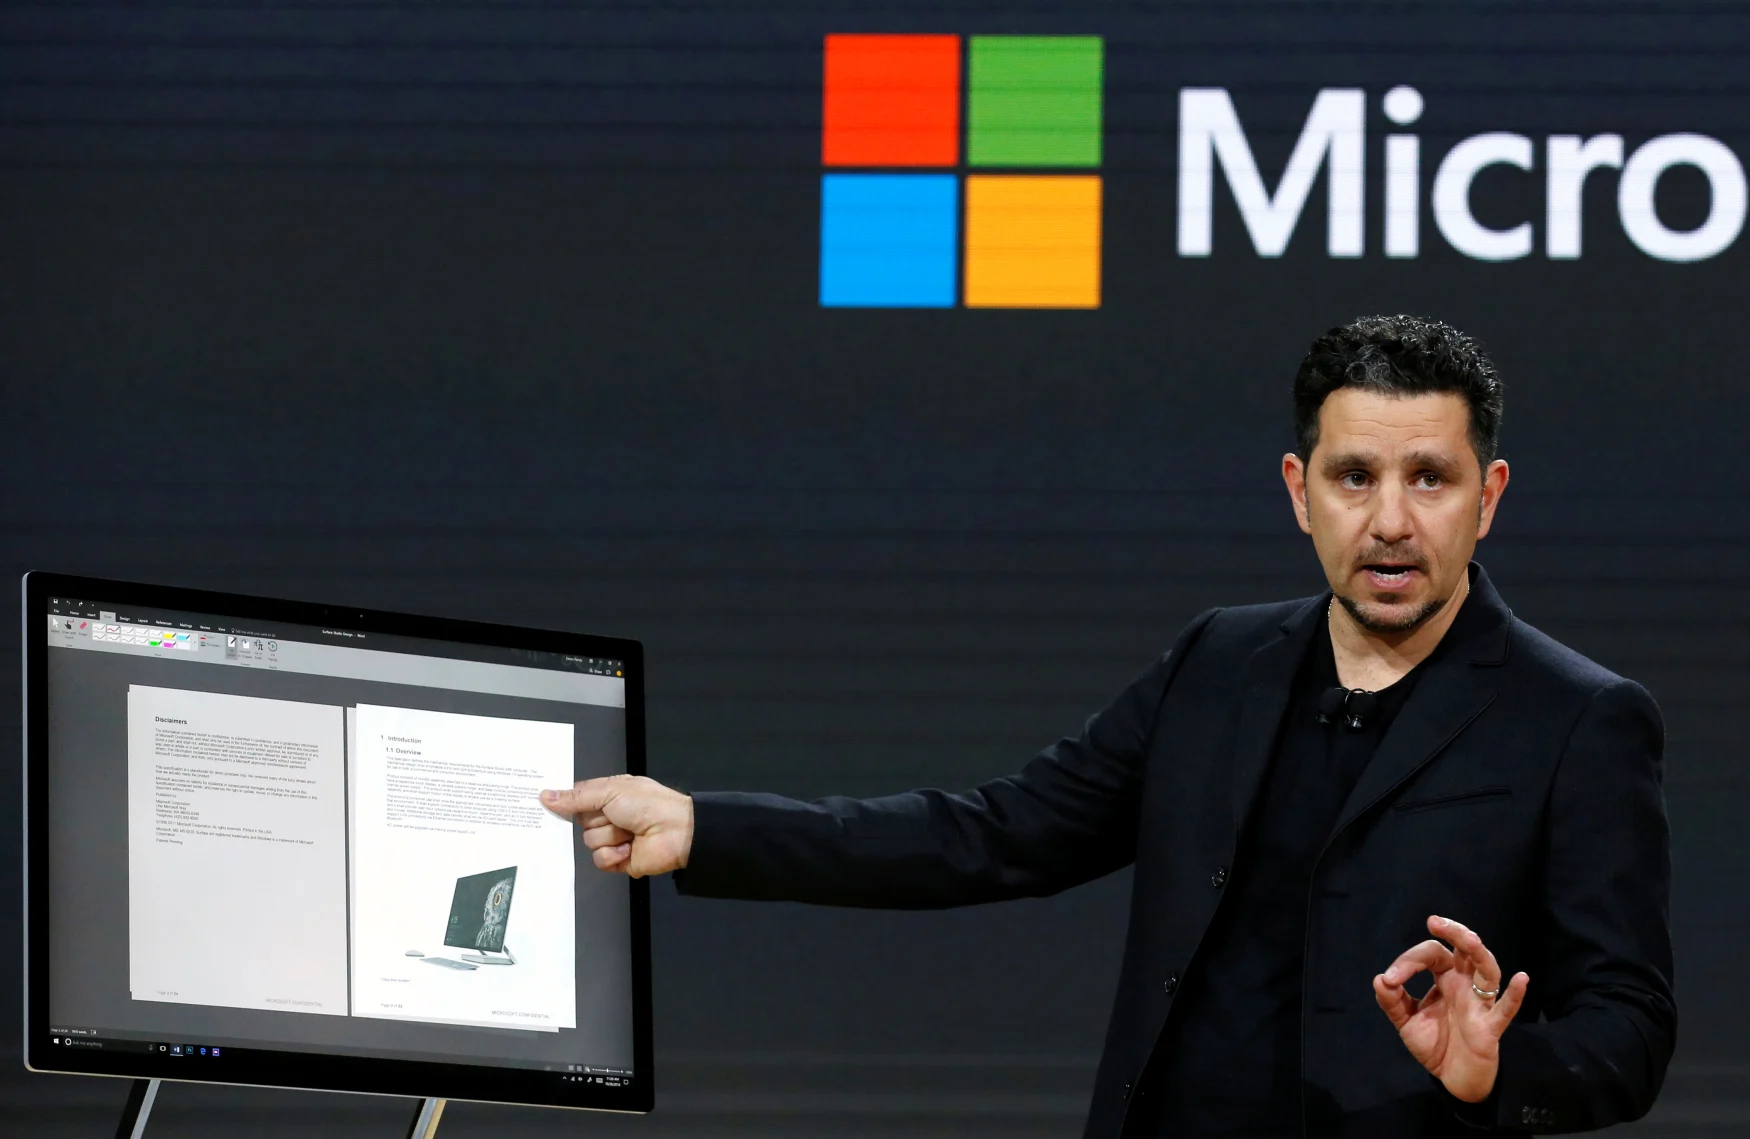 Ο Panos Panay, Corporate Vice President for Surface Computing παρουσιάζει τον νέο υπολογιστή Microsoft Surface Studio σε μια ζωντανή εκδήλωση στο δήμο Μανχάταν της Νέας Υόρκης, 26 Οκτωβρίου 2016. REUTERS/Lucas Jackson